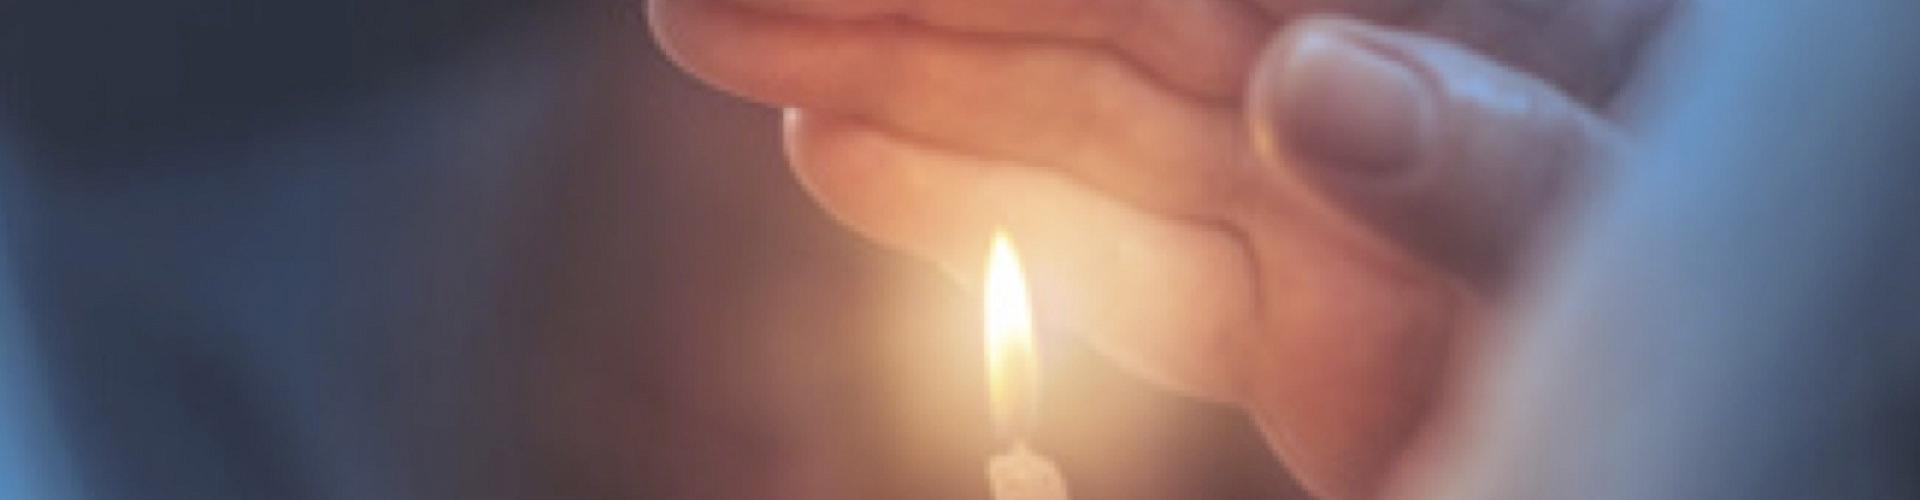 Soluciones Entidades Religiosas cabecera - Mano agarrando una vela encendida - Rural Kutxa